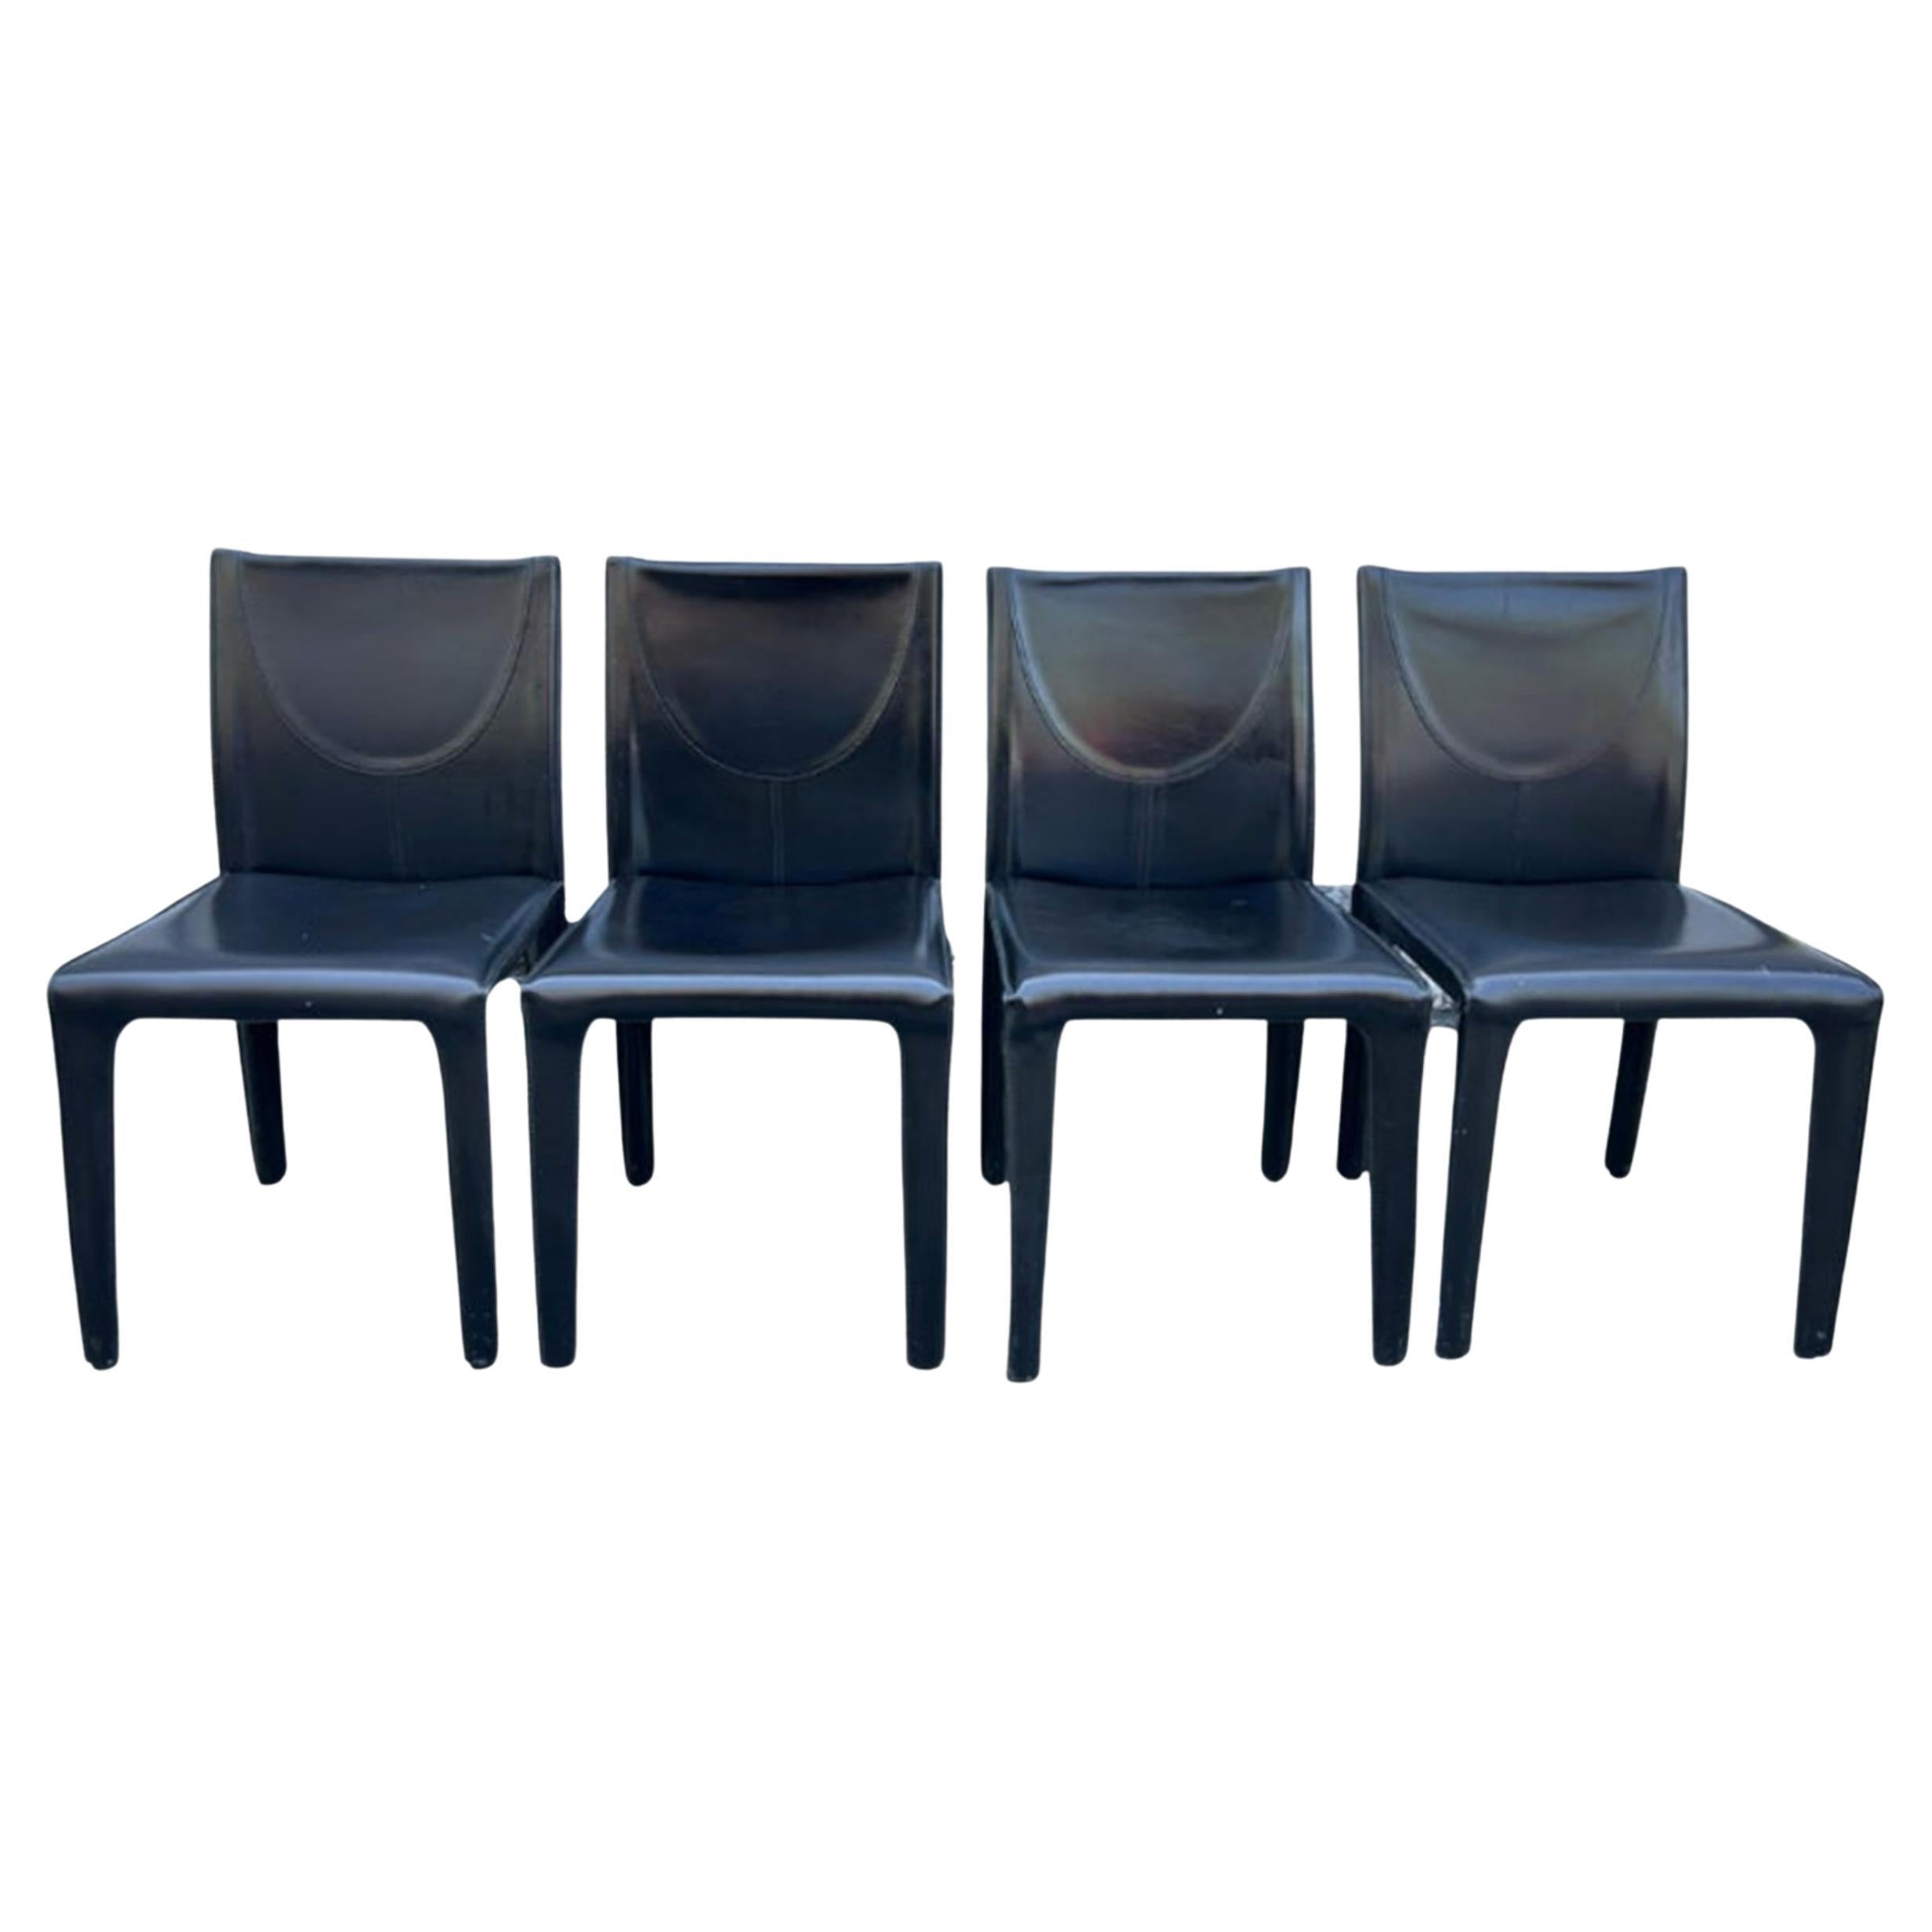 Ensemble de 4 chaises de salle à manger recouvertes de cuir noir par Arper, fabriquées en Italie